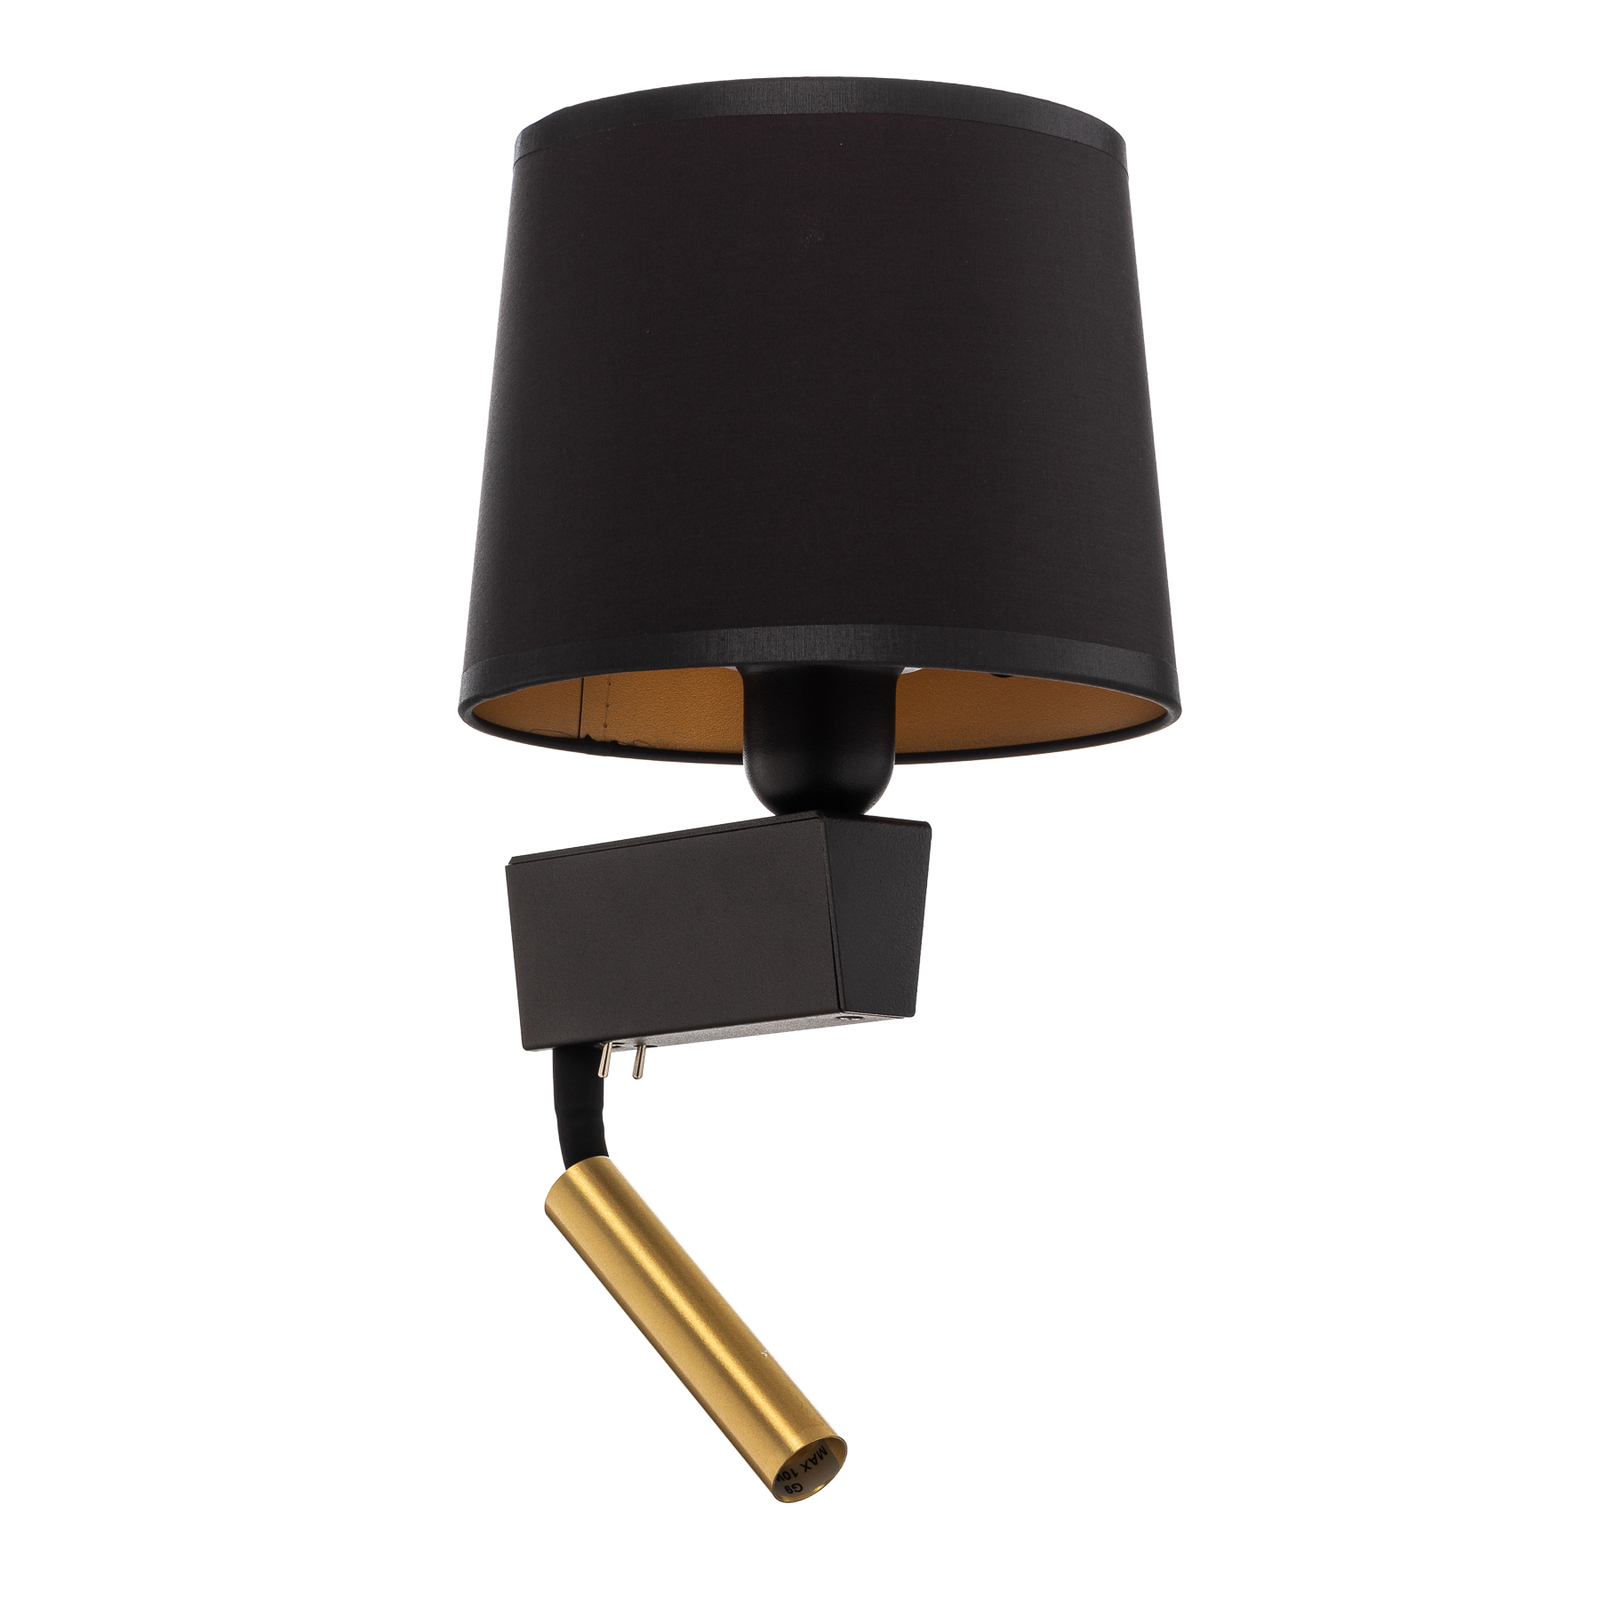 Chillin wandlamp met leeslampje, zwart/goud